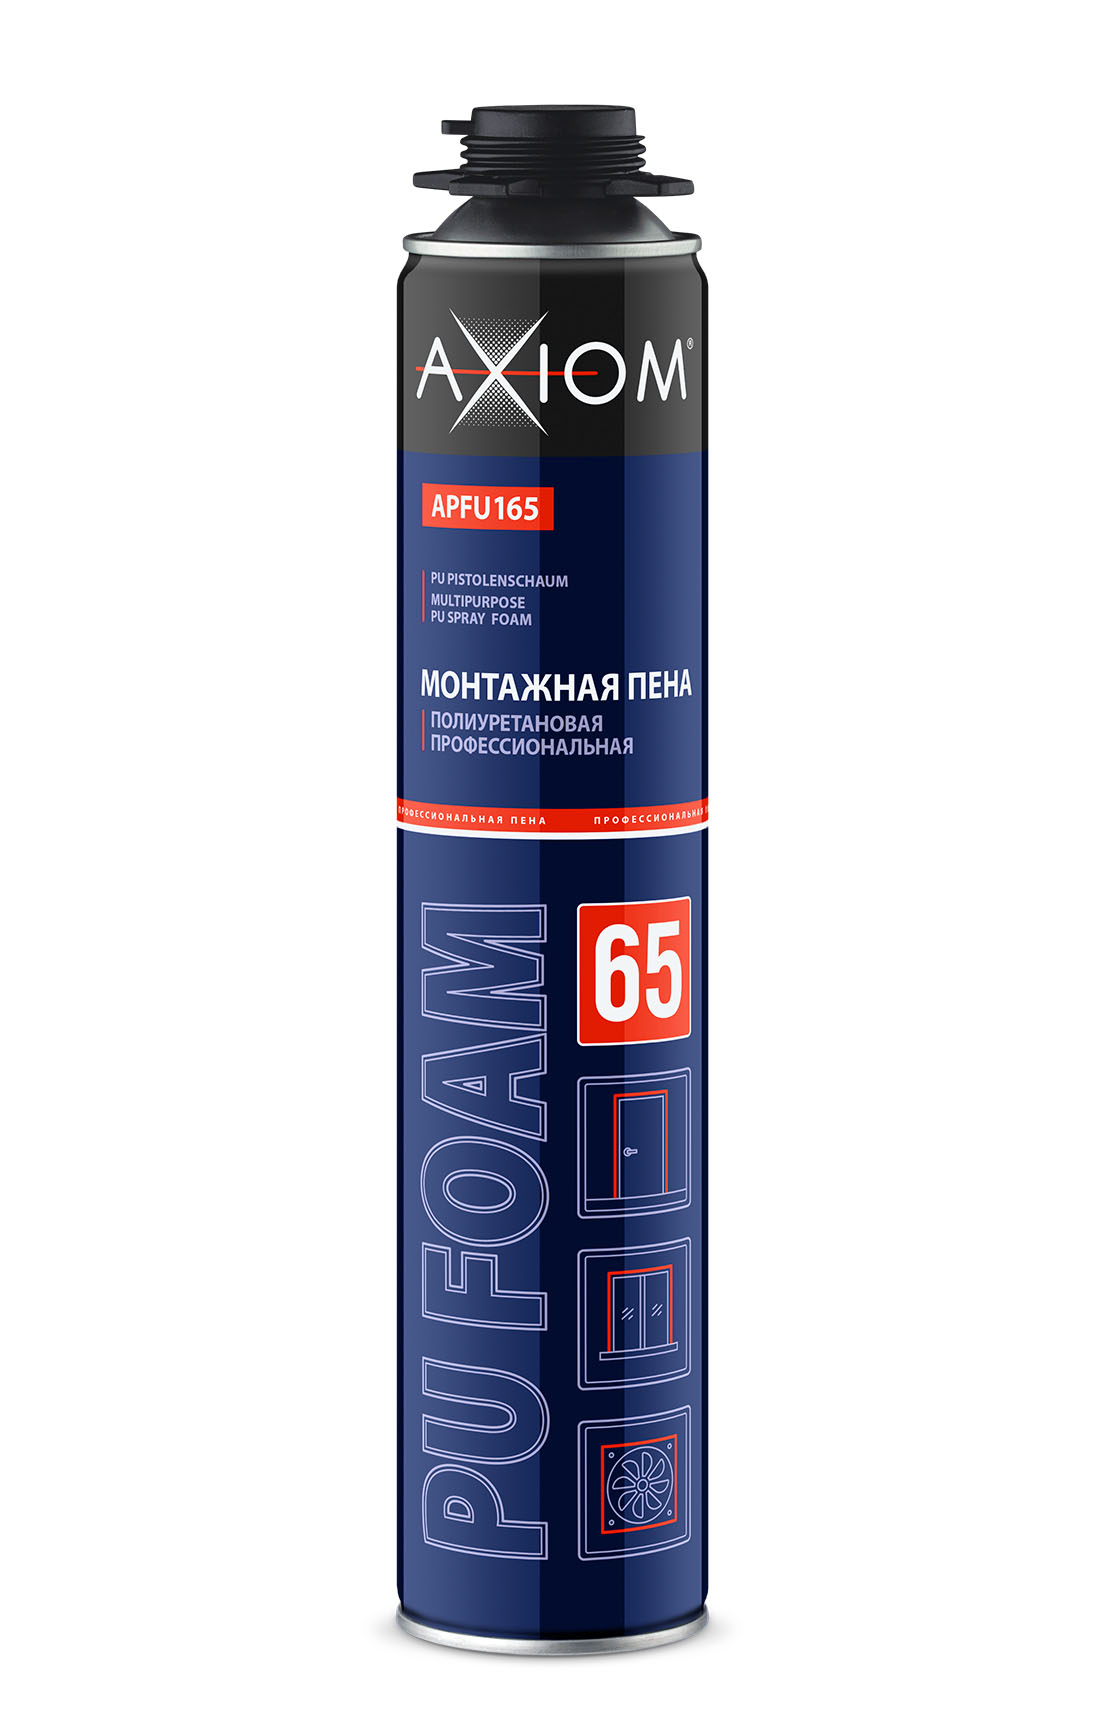 Axiom  APFU165 Пена полиуретановая монтажная профессиональная всесезонная 1000 мл  | Helas.ru